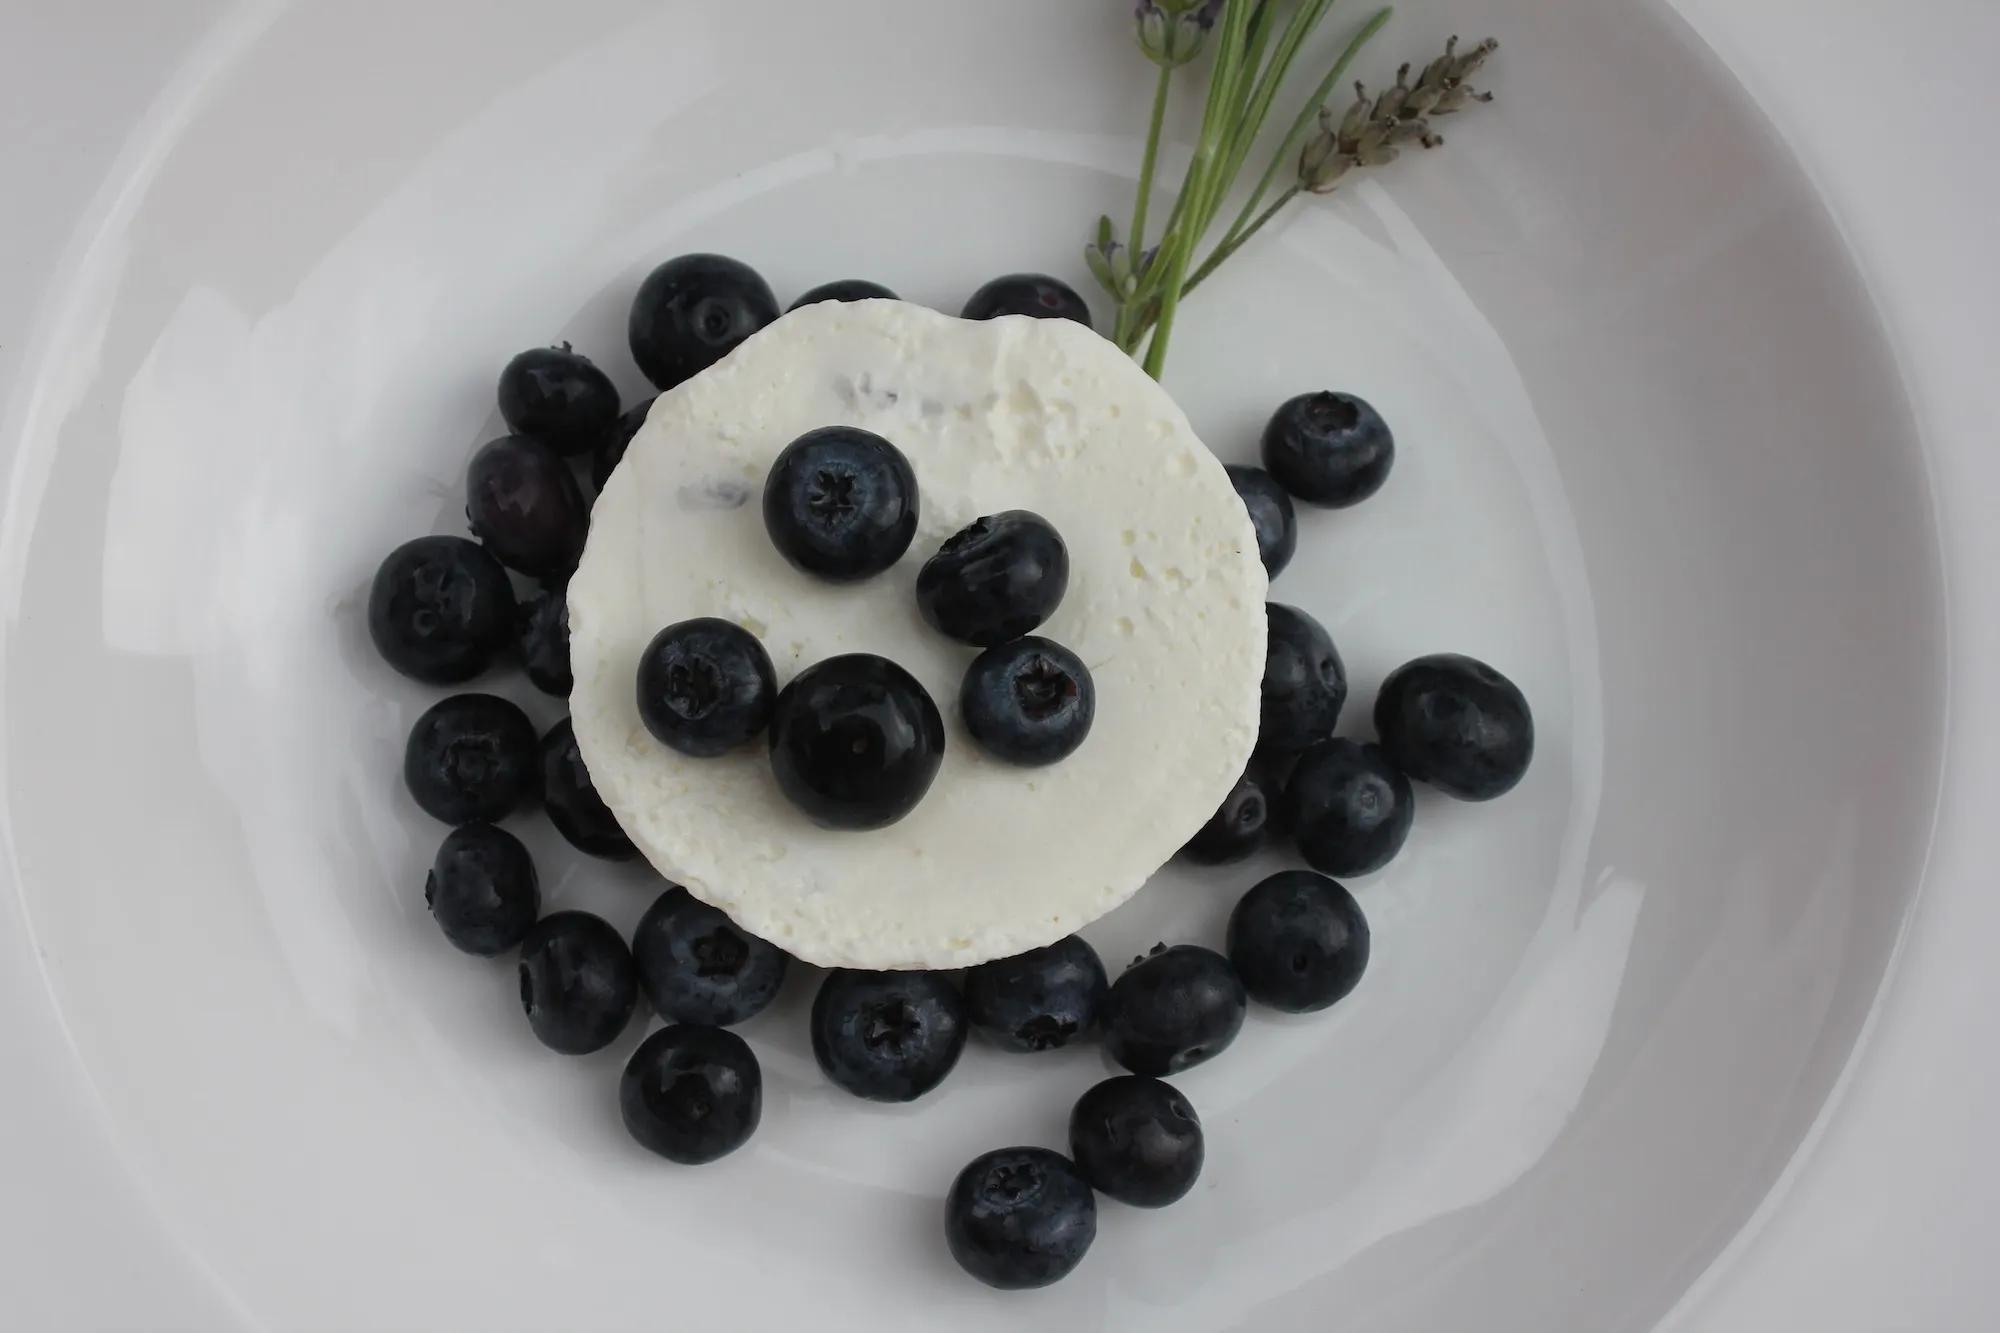 Blaubeer-Lavendel Cheesecakes - Siamo ció che mangiamo - Food Blog